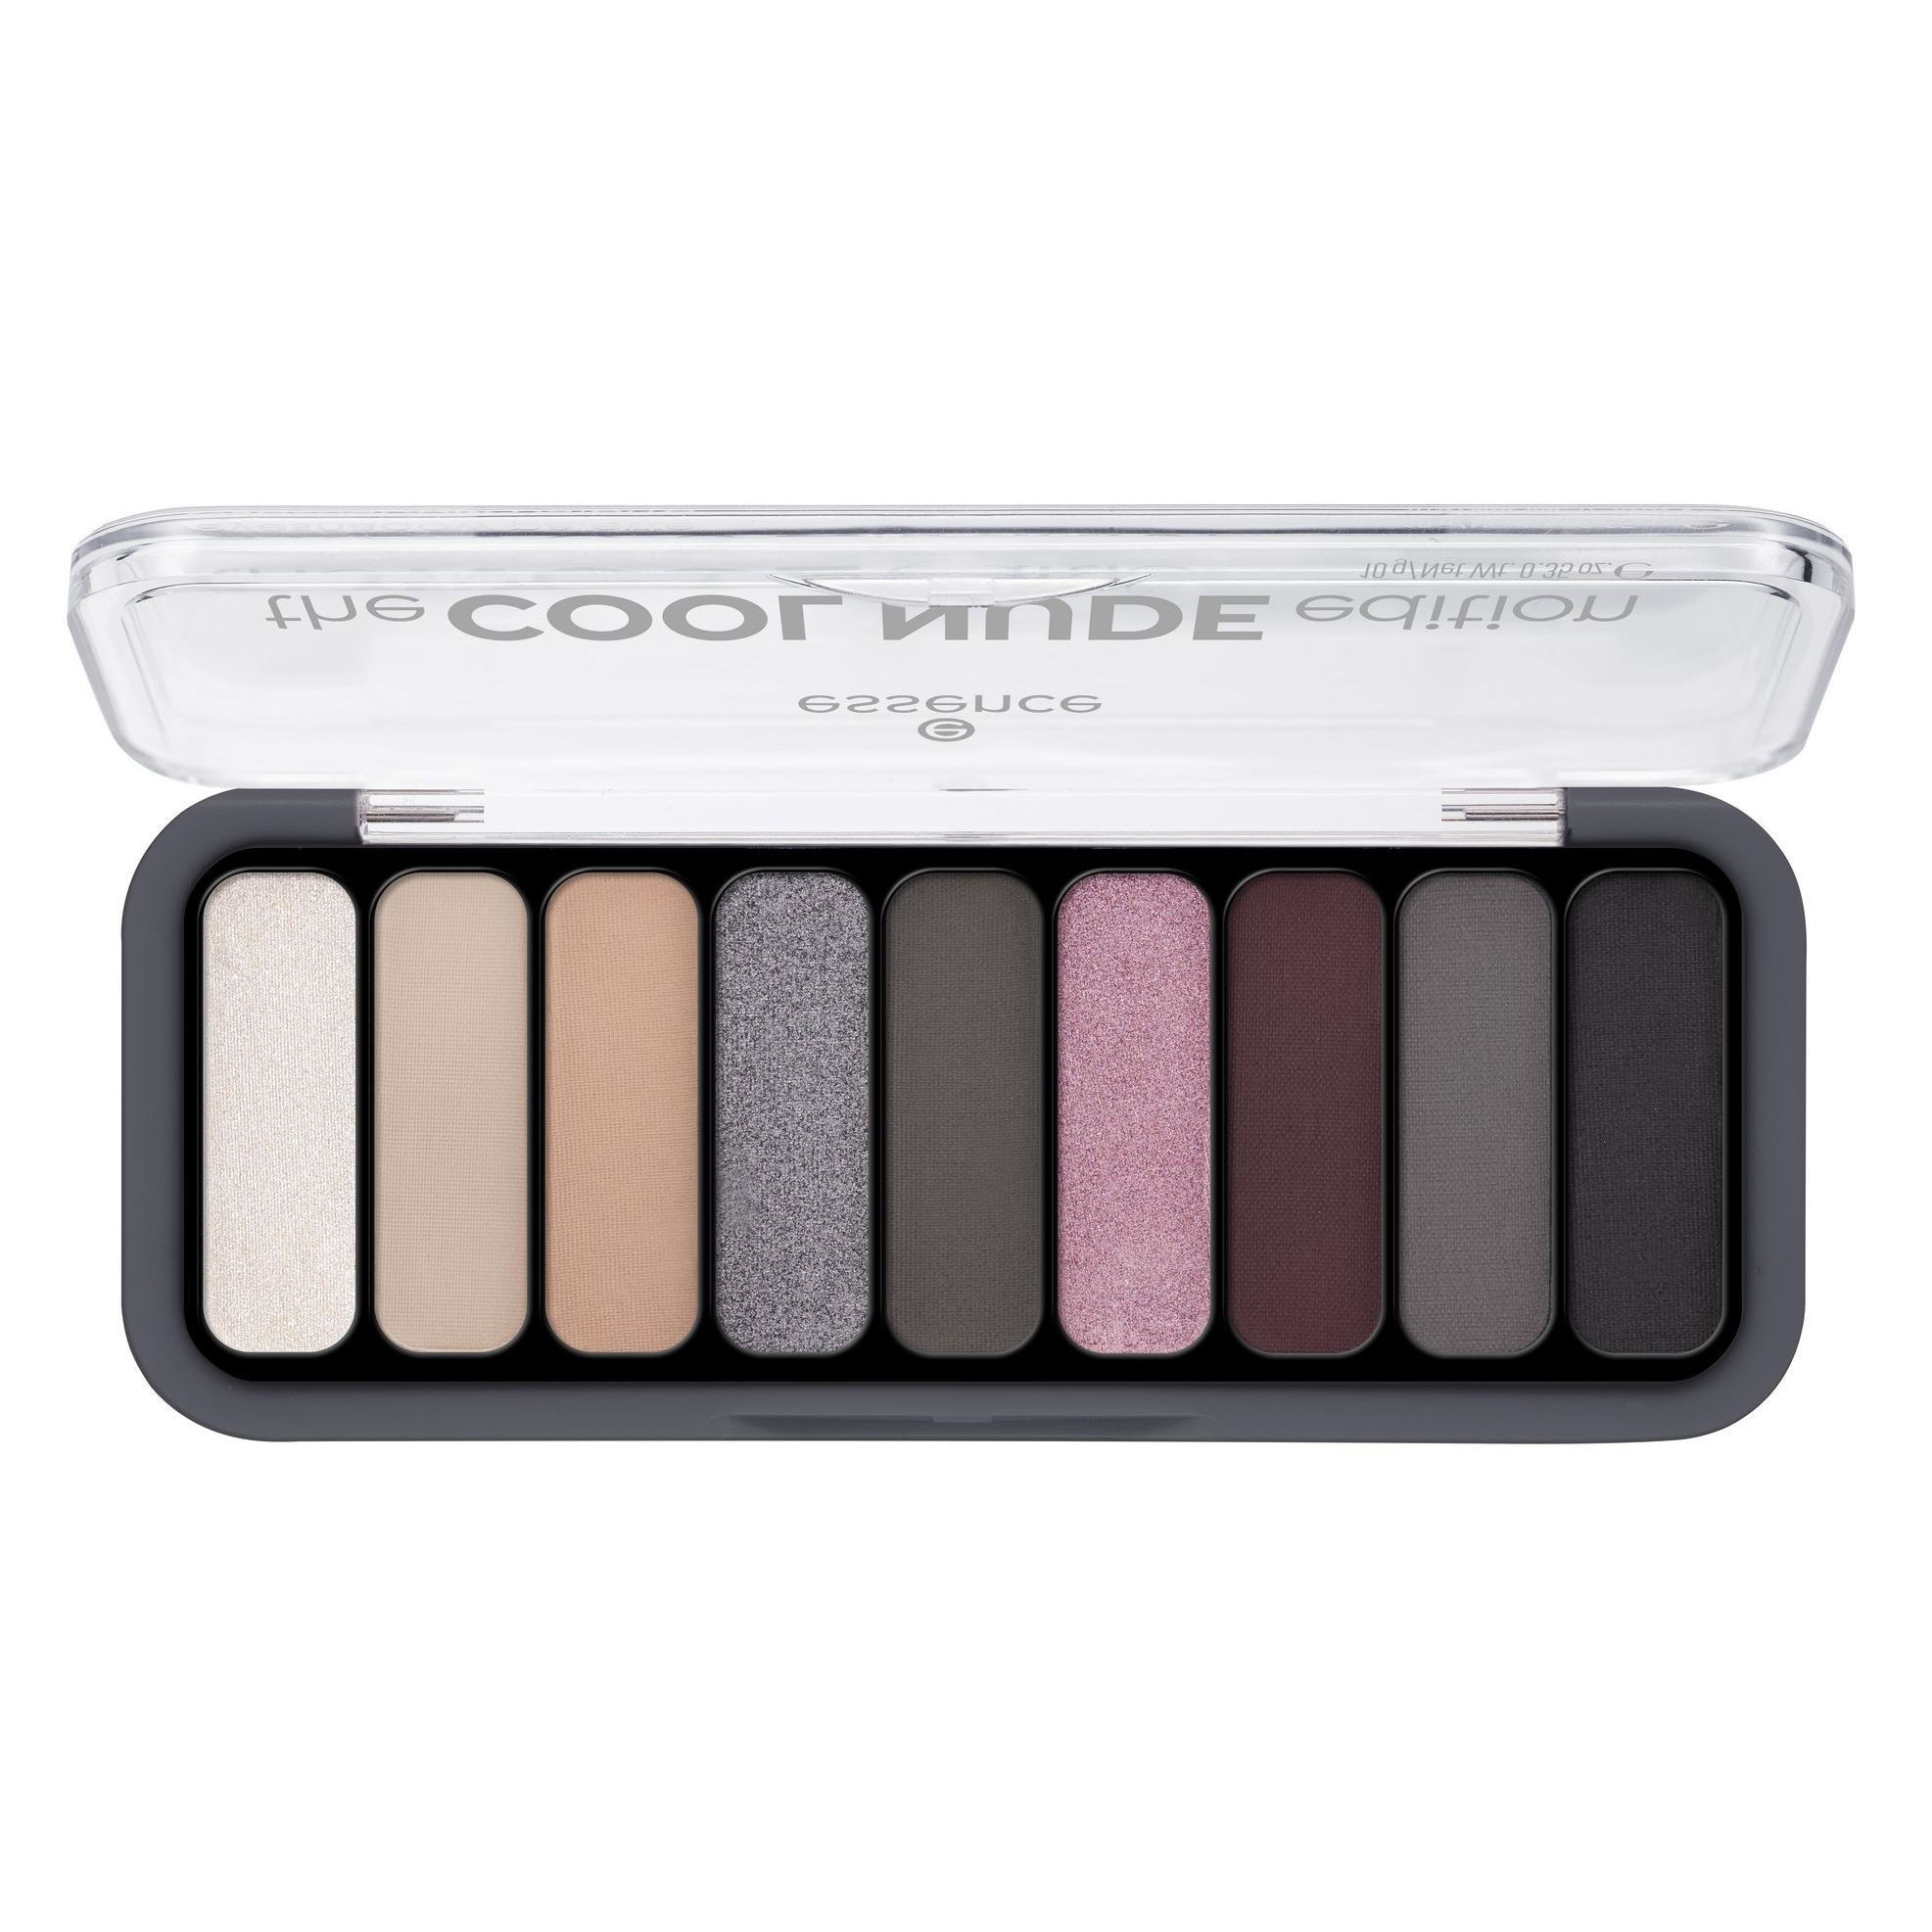 Palette de Fards à Paupières - The Cool Nude Edition Eyeshadow Palette